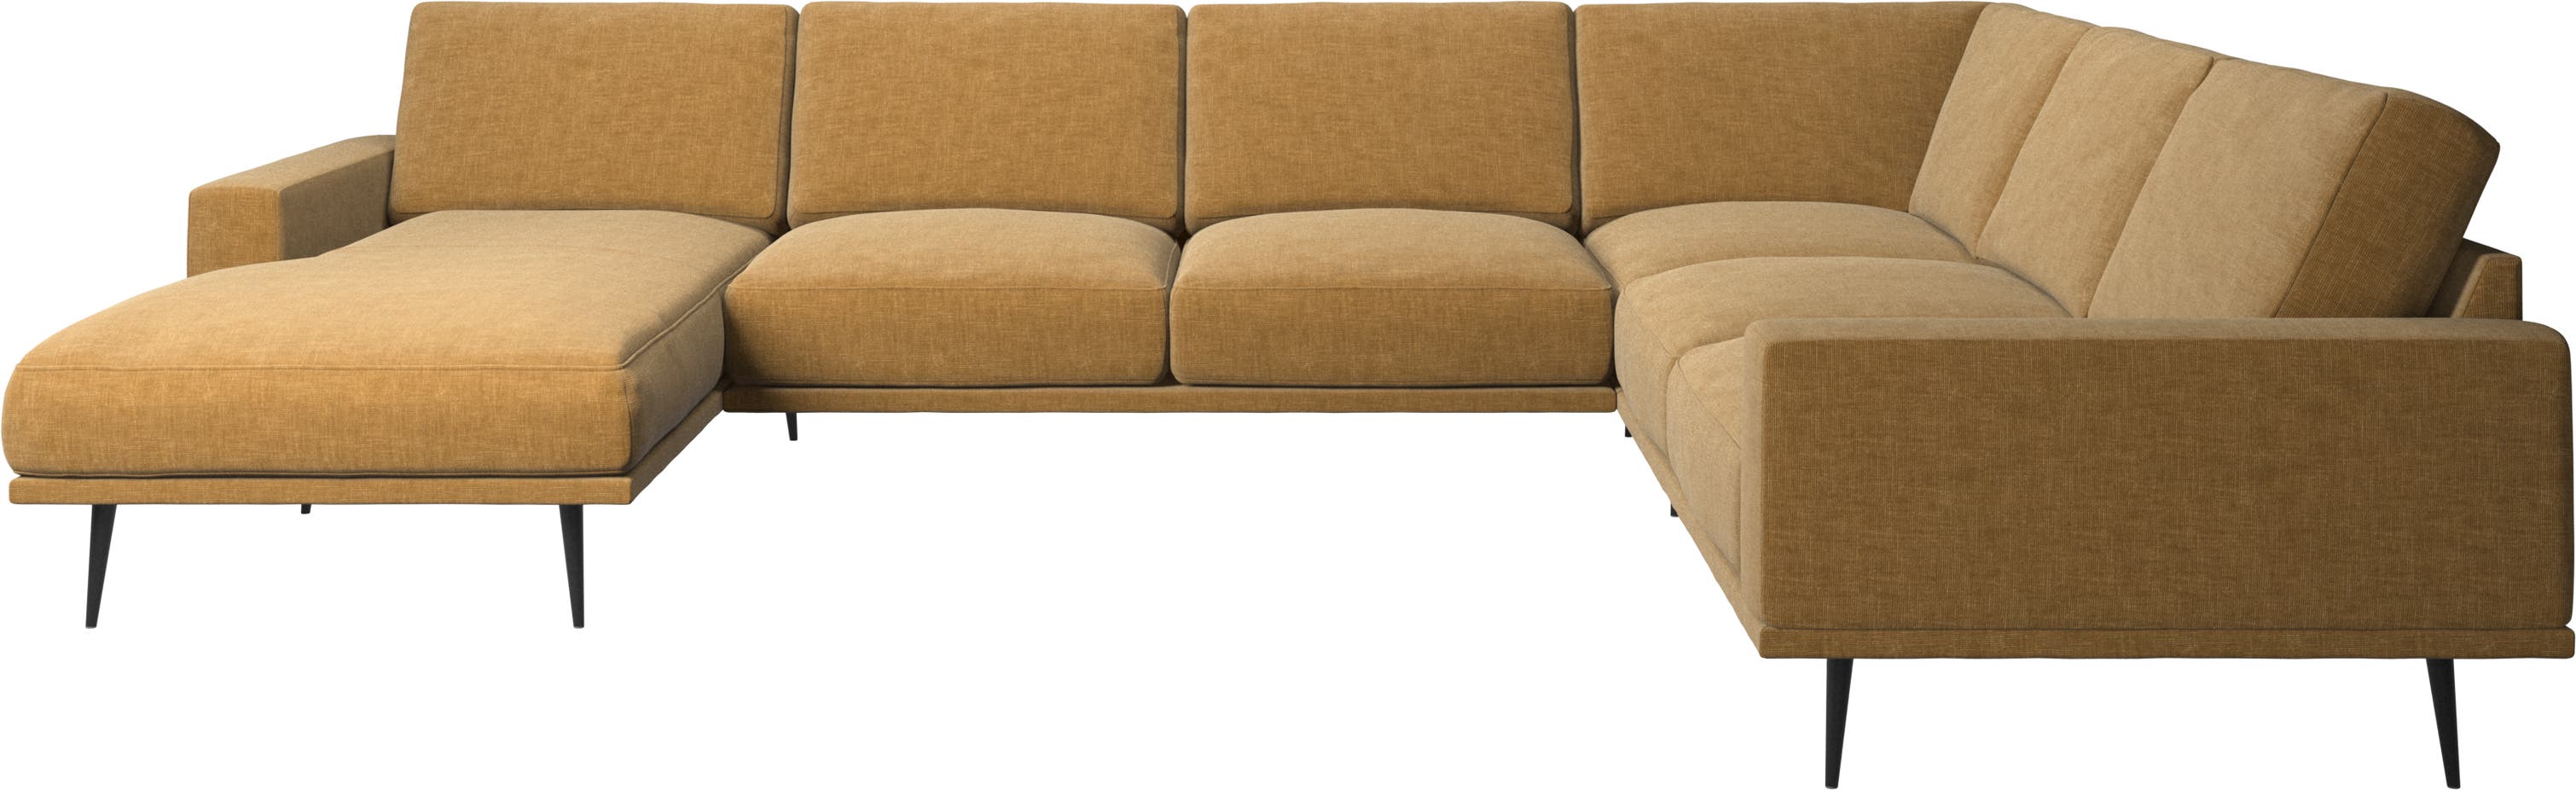 Sofa narożna Carlton z szezlongiem